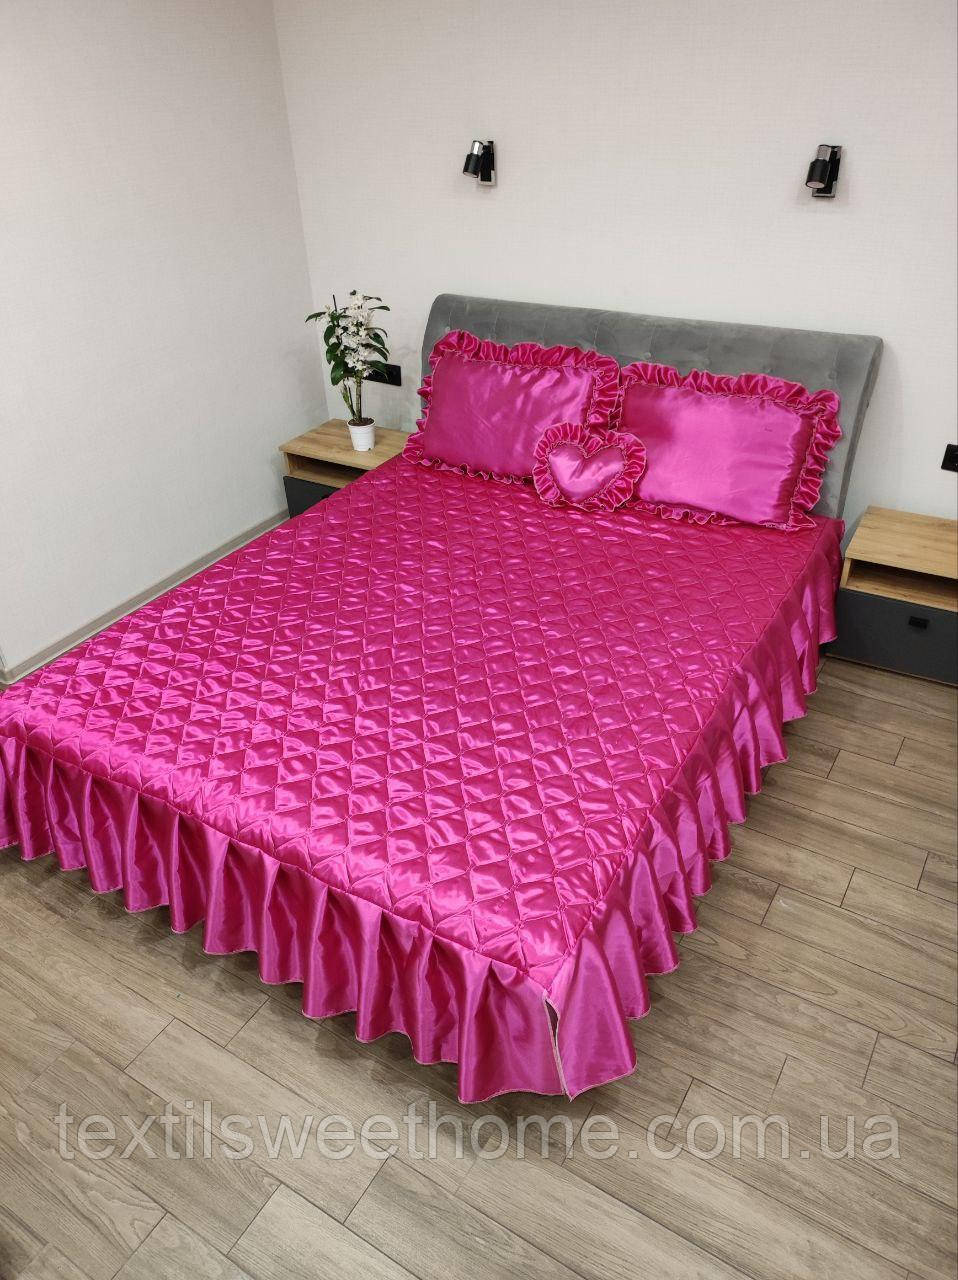 Покривало з атласу для двоспального ліжка з комплектом подушок кольору фуксія